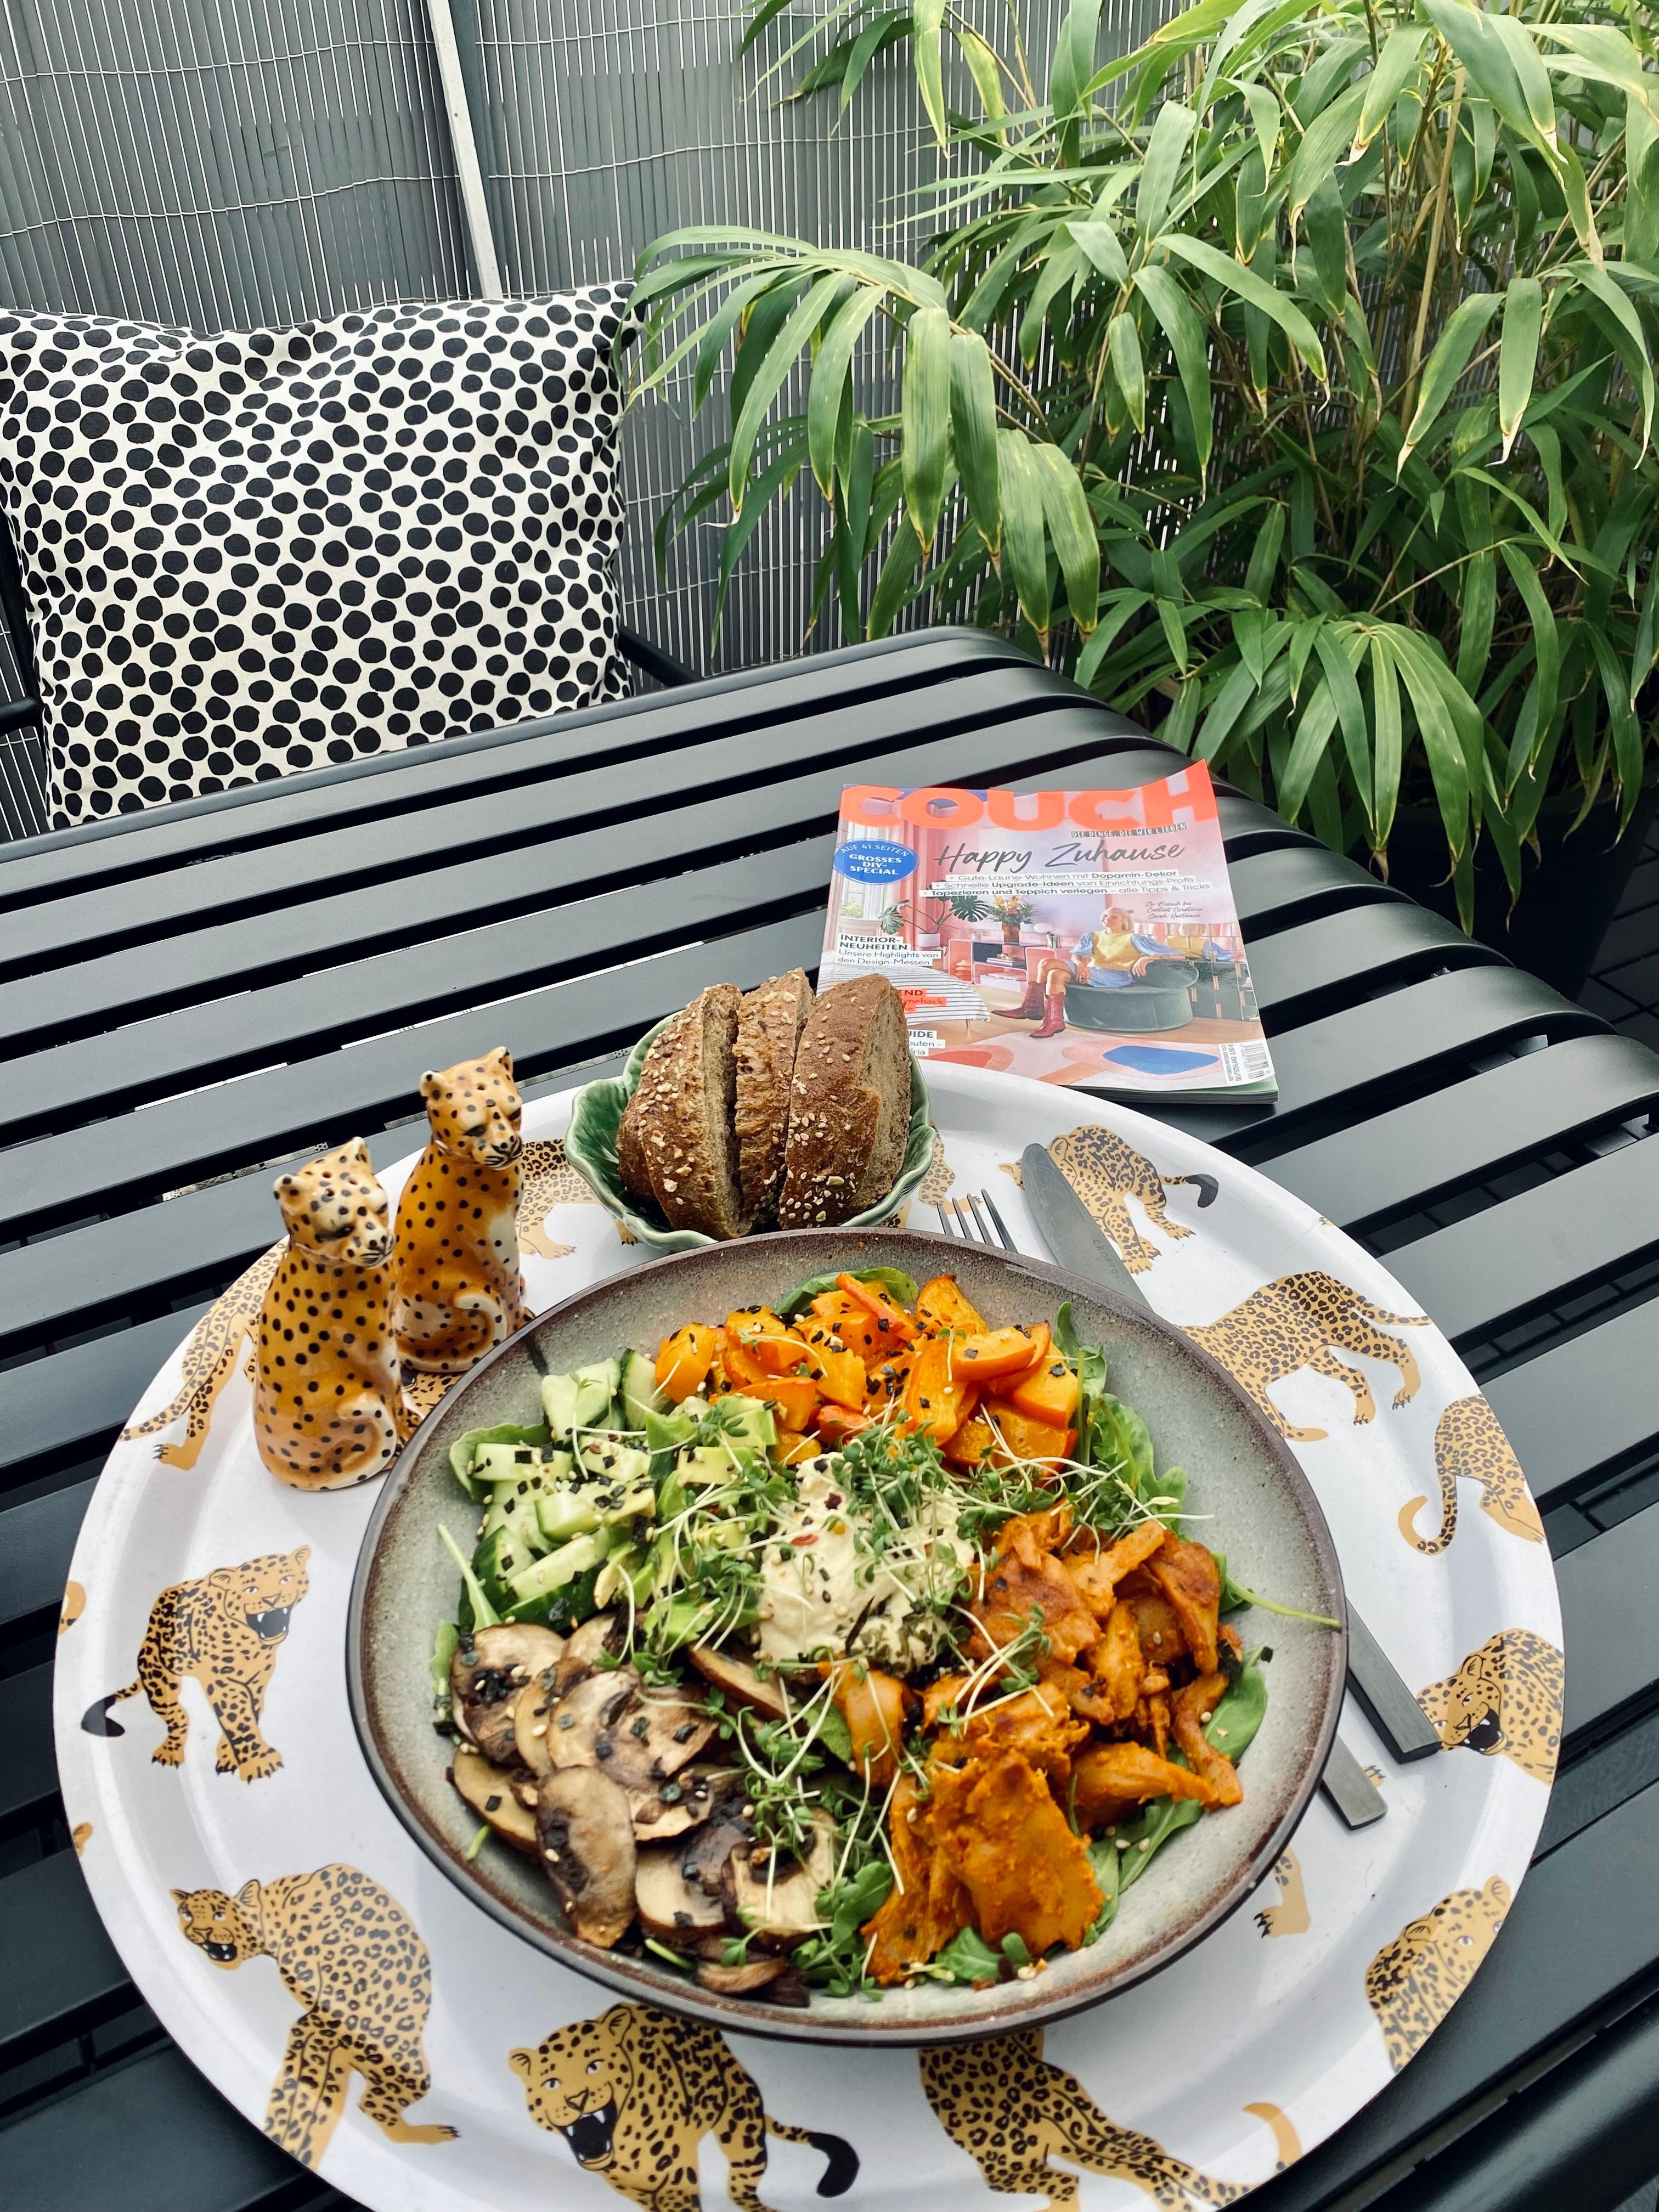 Dinnertime 🐆 
#veggie #dinner #summerevenings #couchmag #homemade #eattherainbow #balkonien